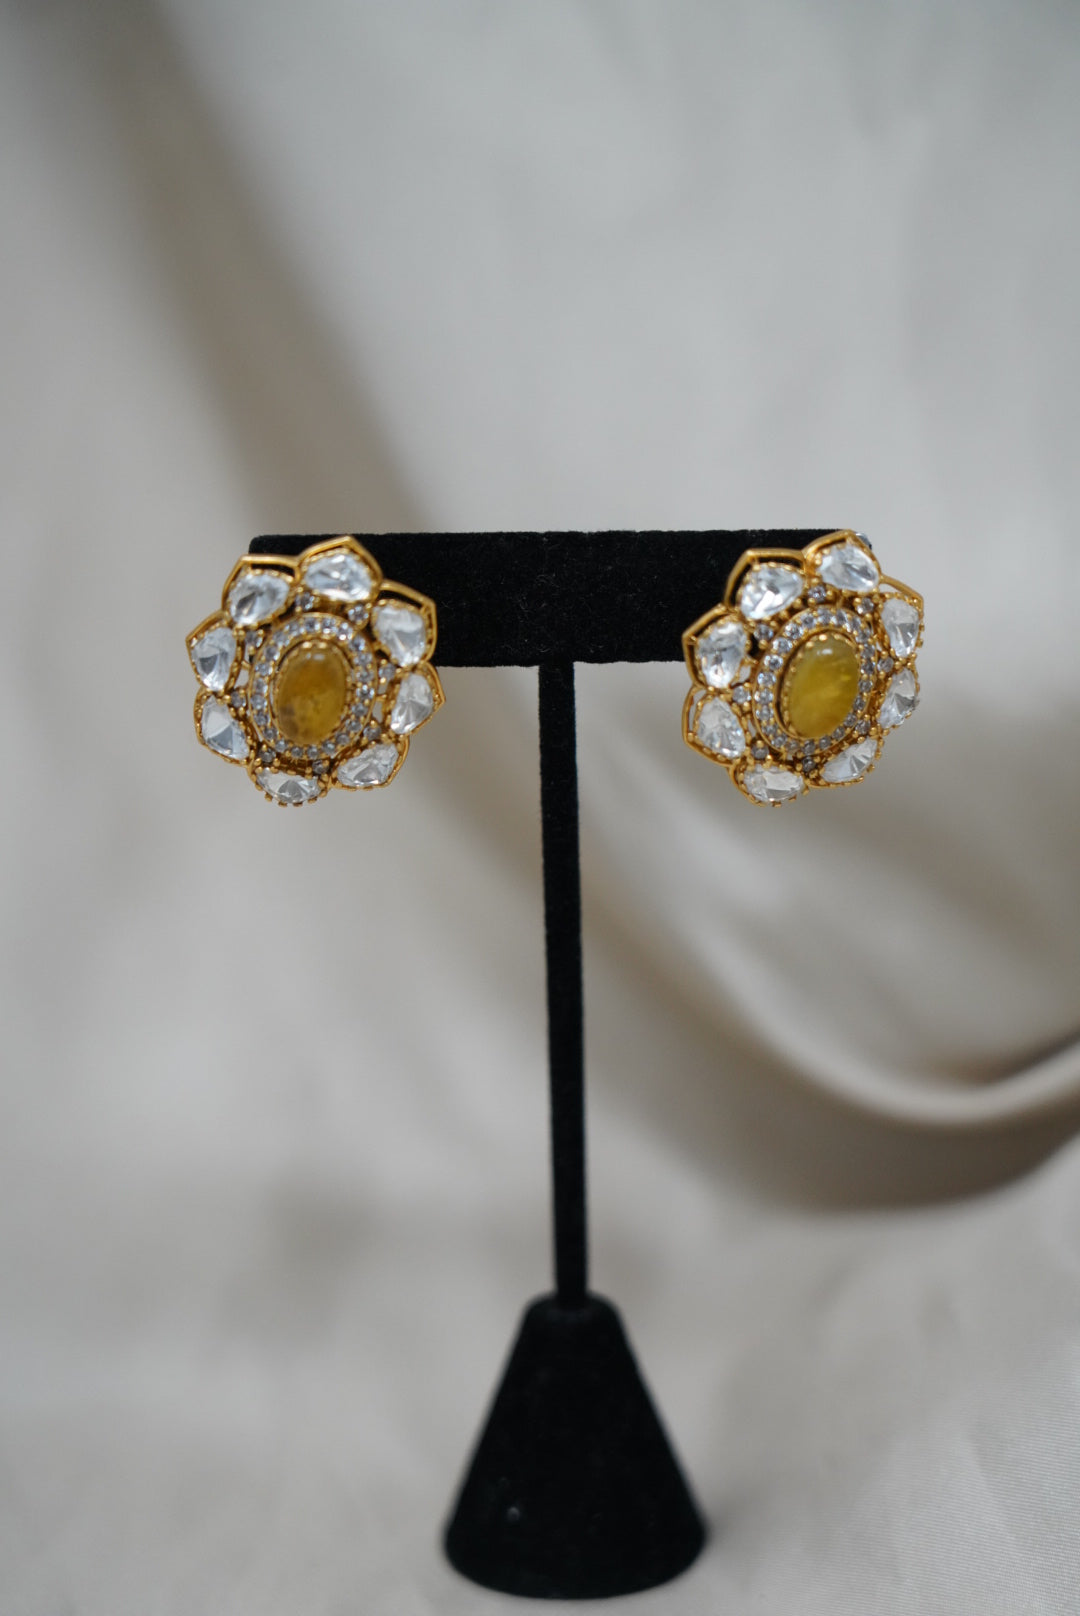 Polki Studded Gold Plated Earrings for Women